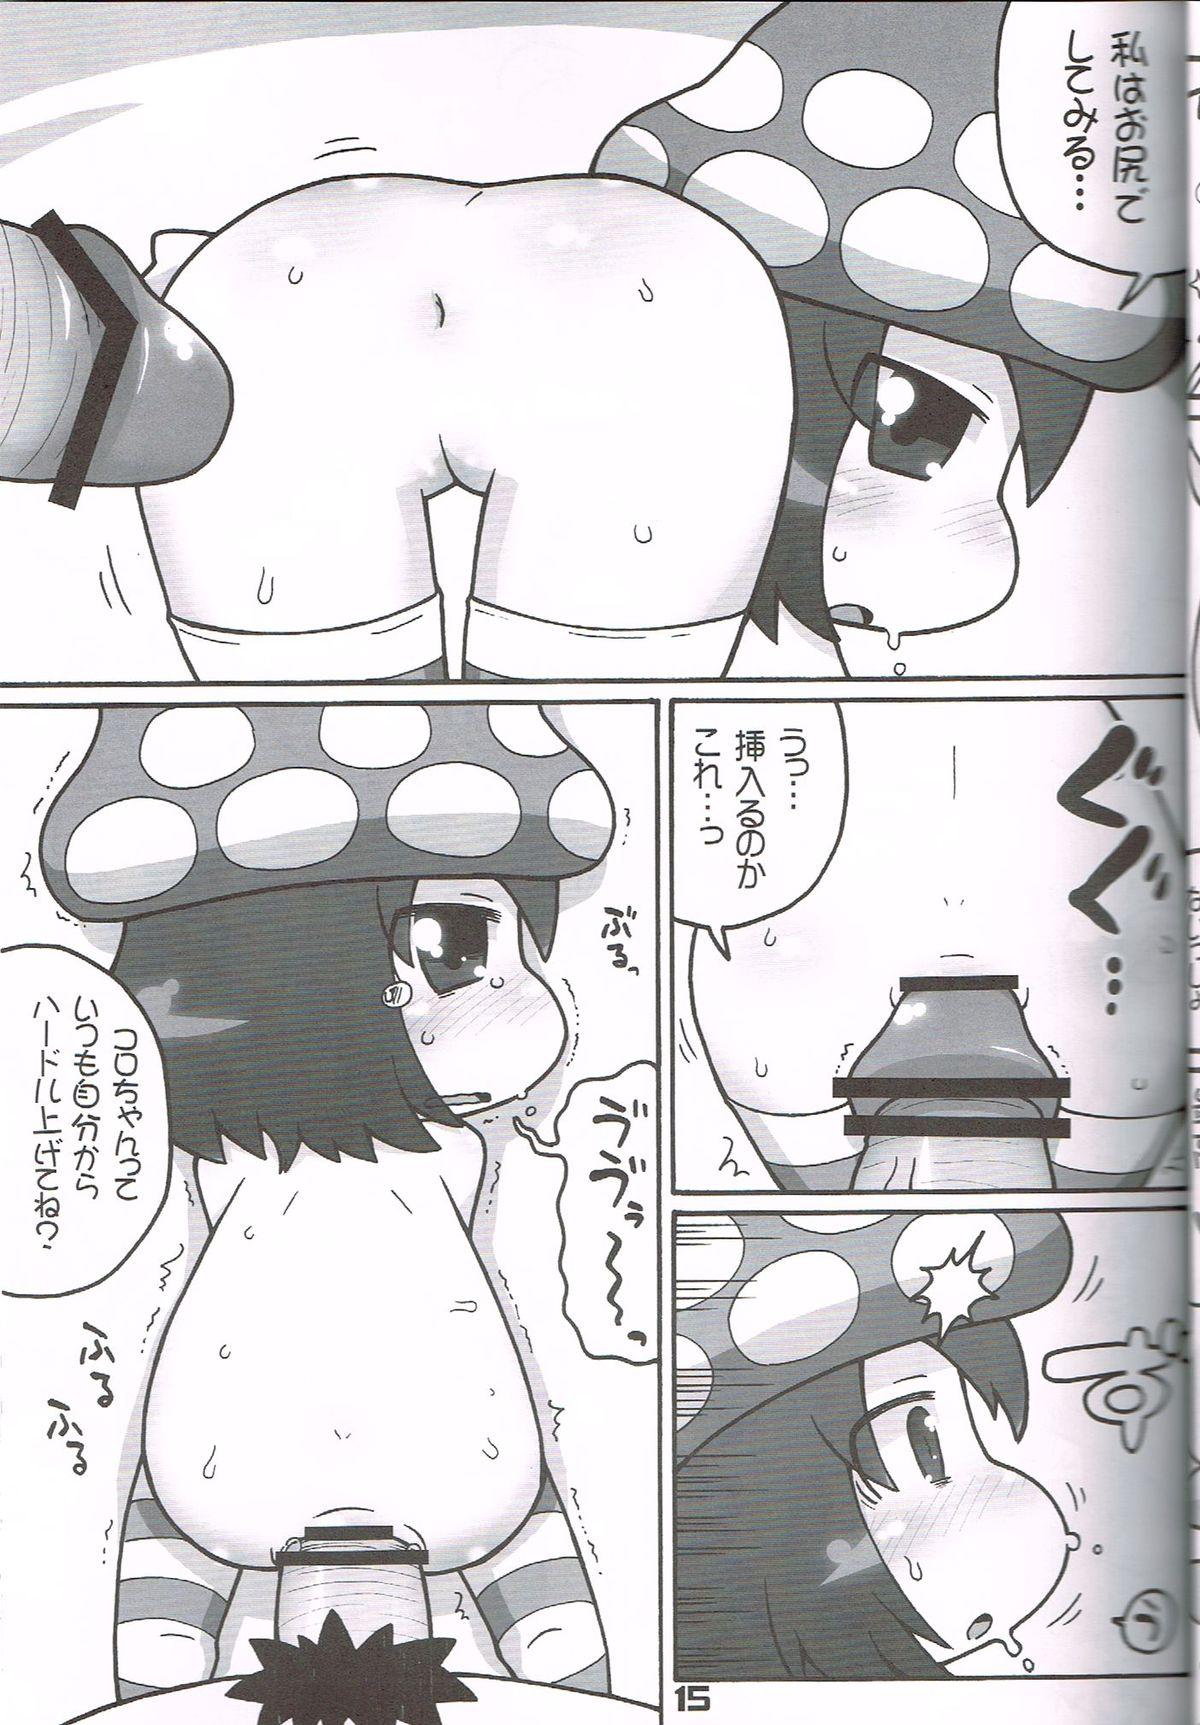 Chupando Hatashite Konofuyu Nansatsu no Doujinshi ga "○○ Fairies" Toiu Title Darouka - Gdgd fairies Shaved Pussy - Page 14